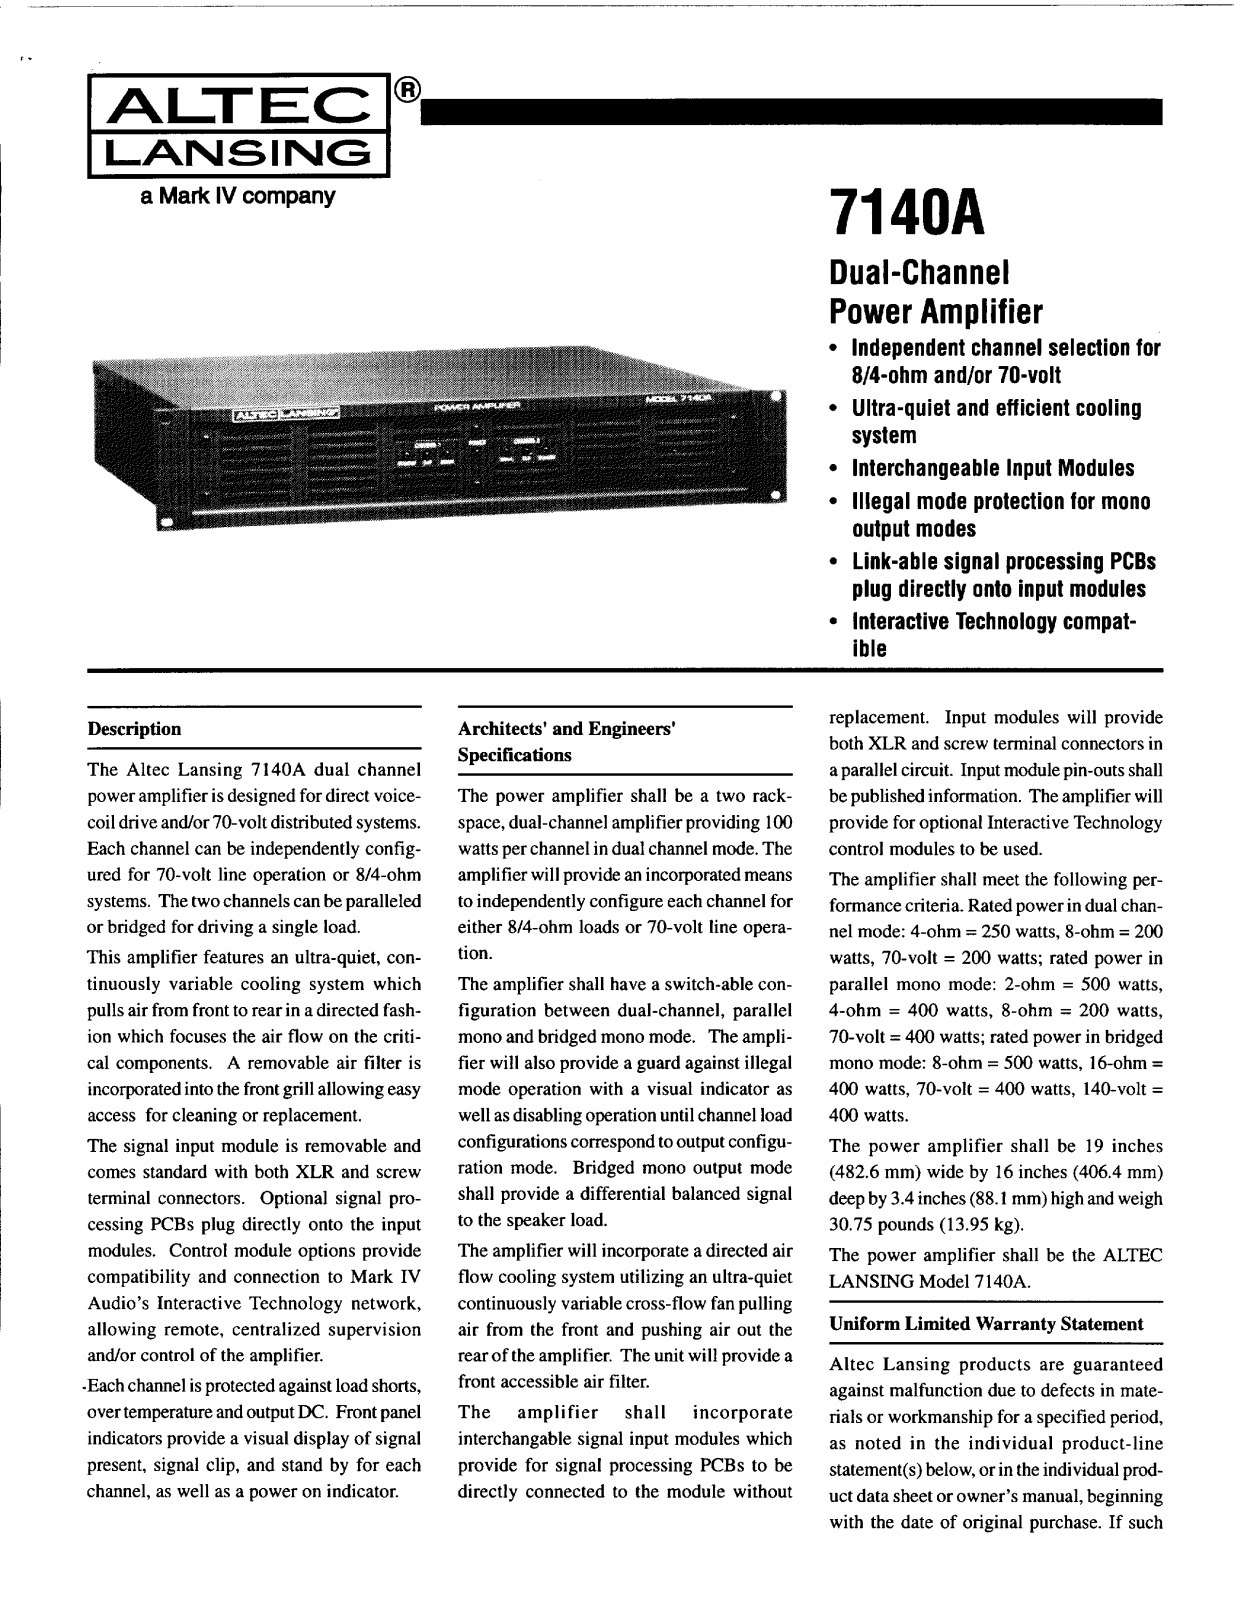 Altec lansing 7140A User Manual